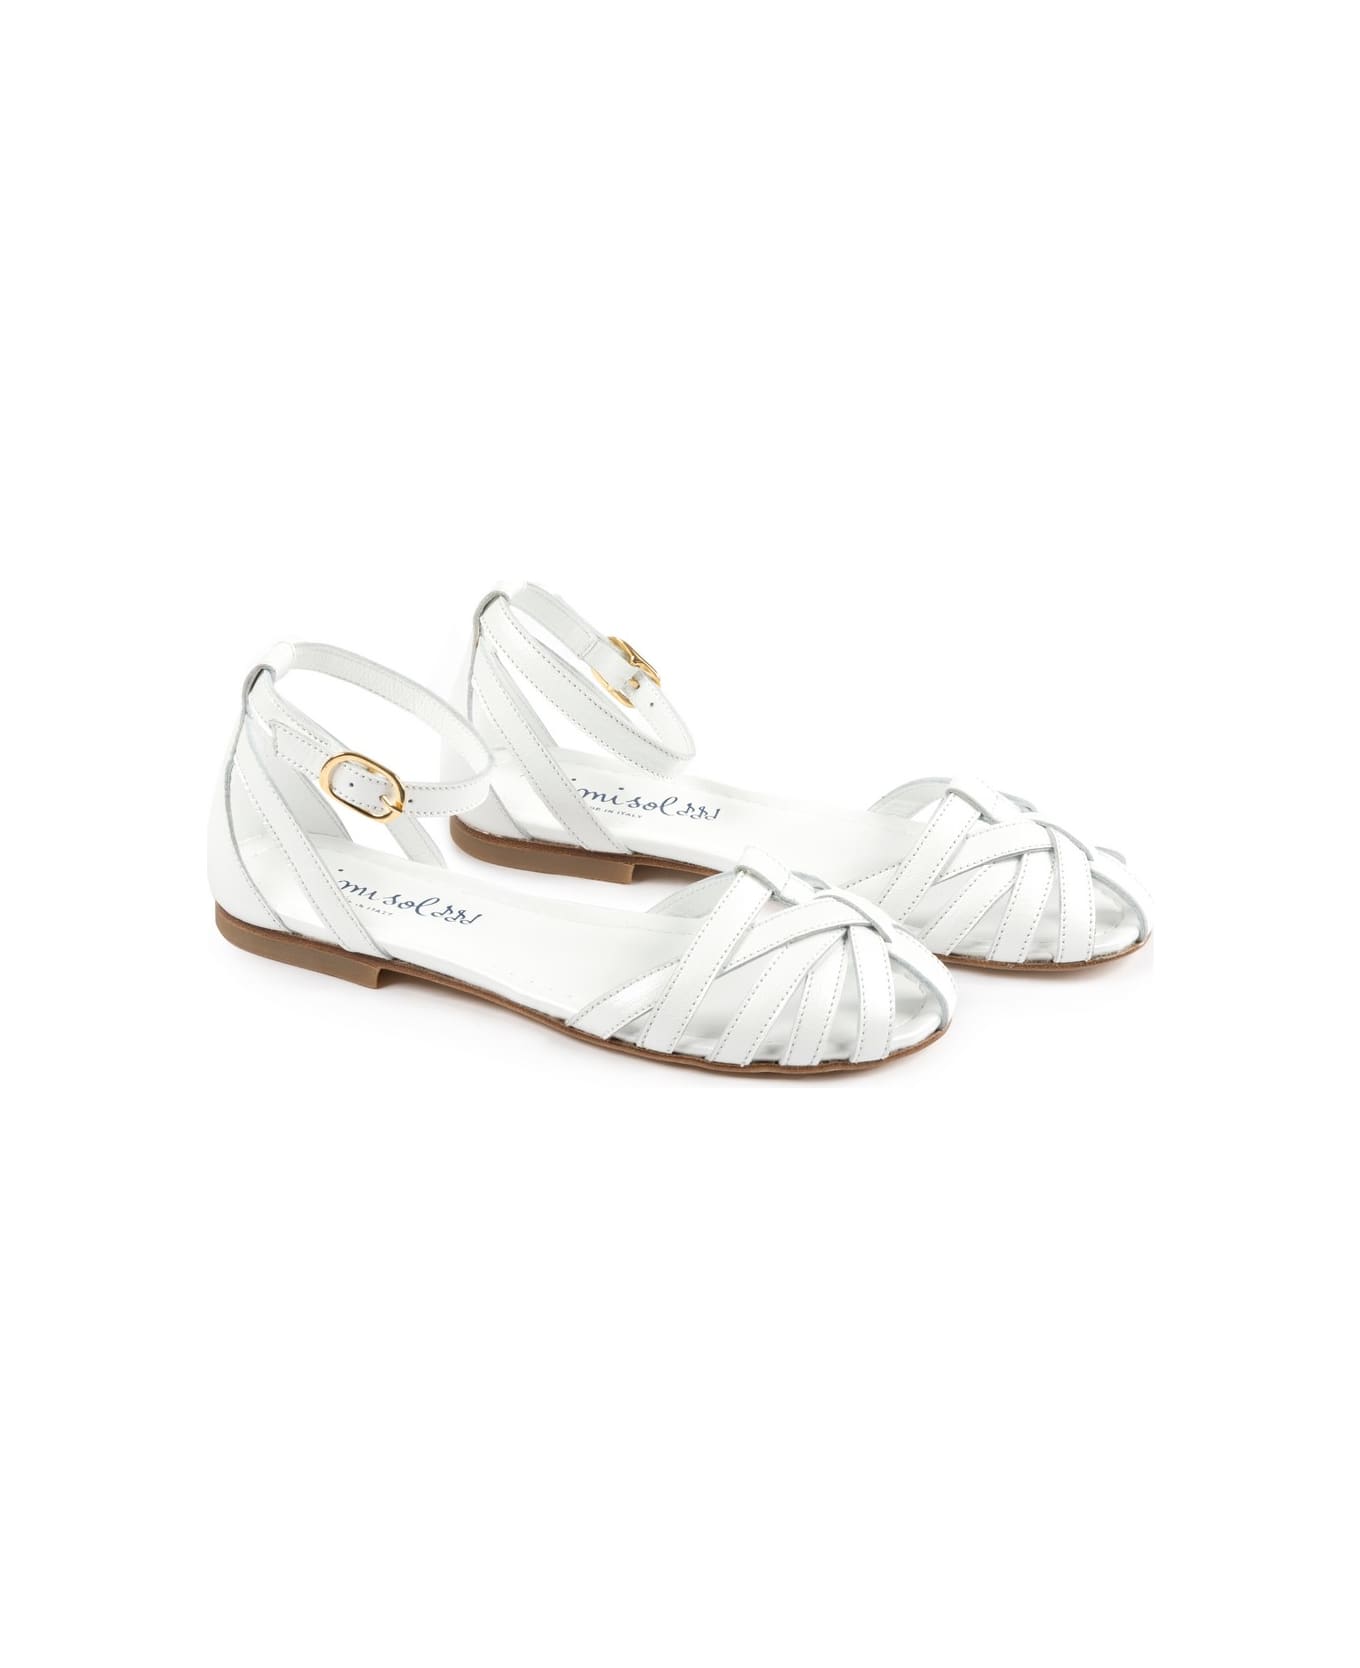 MiMiSol Sandals - White